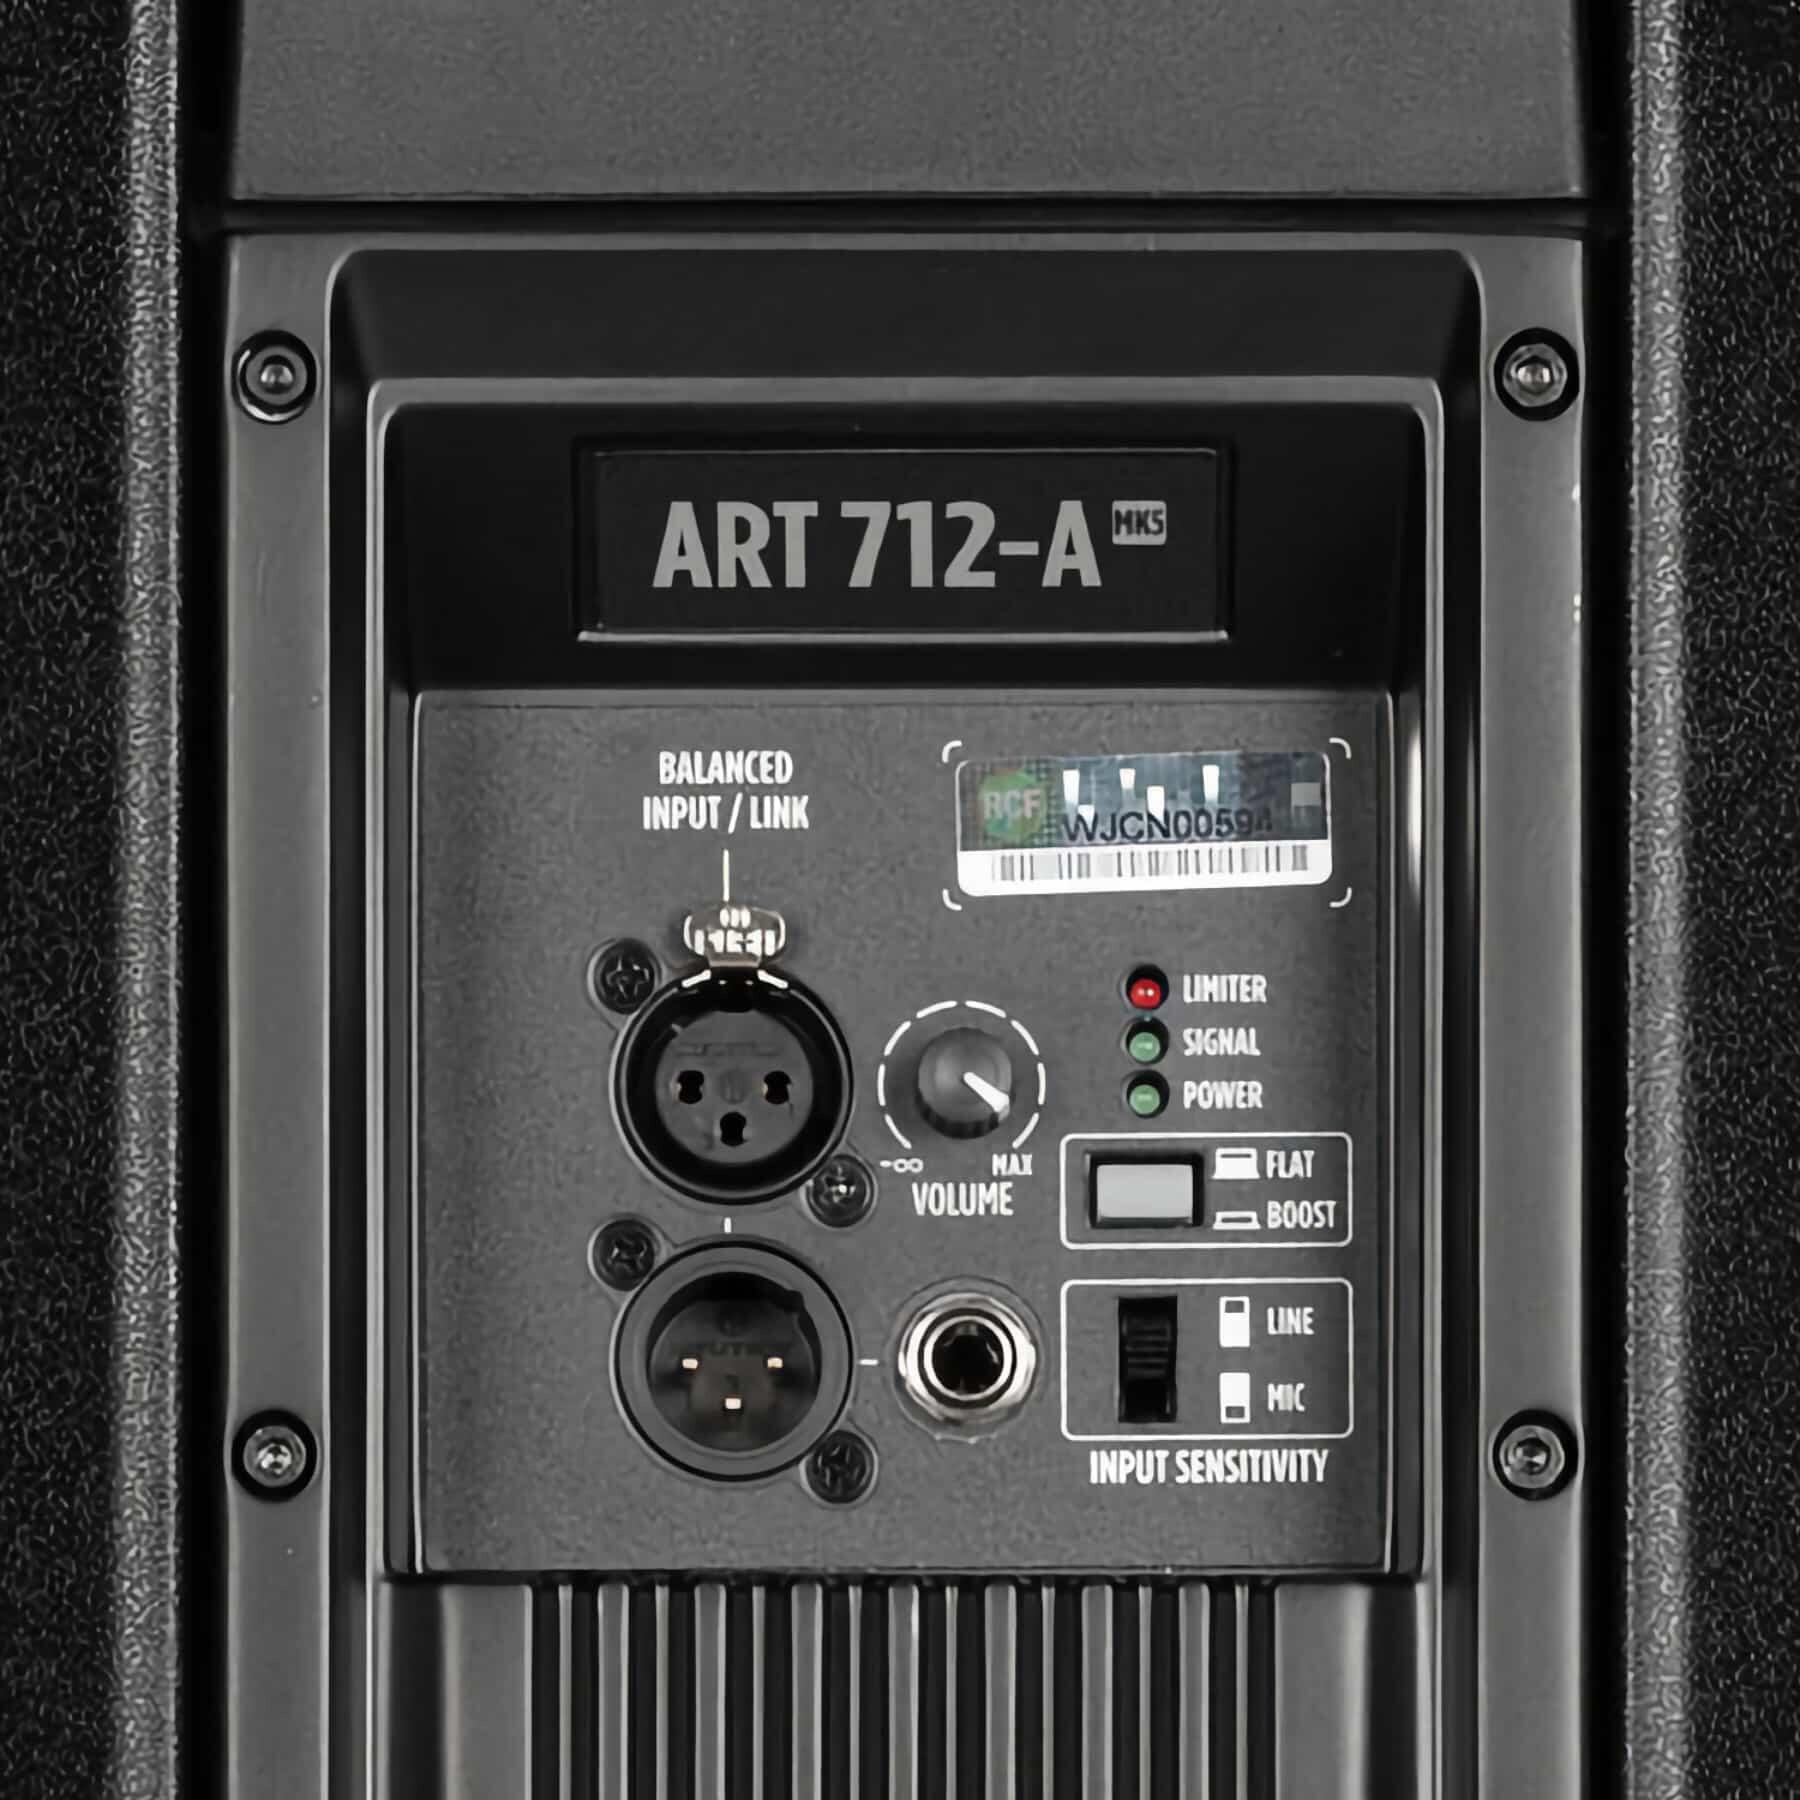 RCF ART 712-A MK5 controls